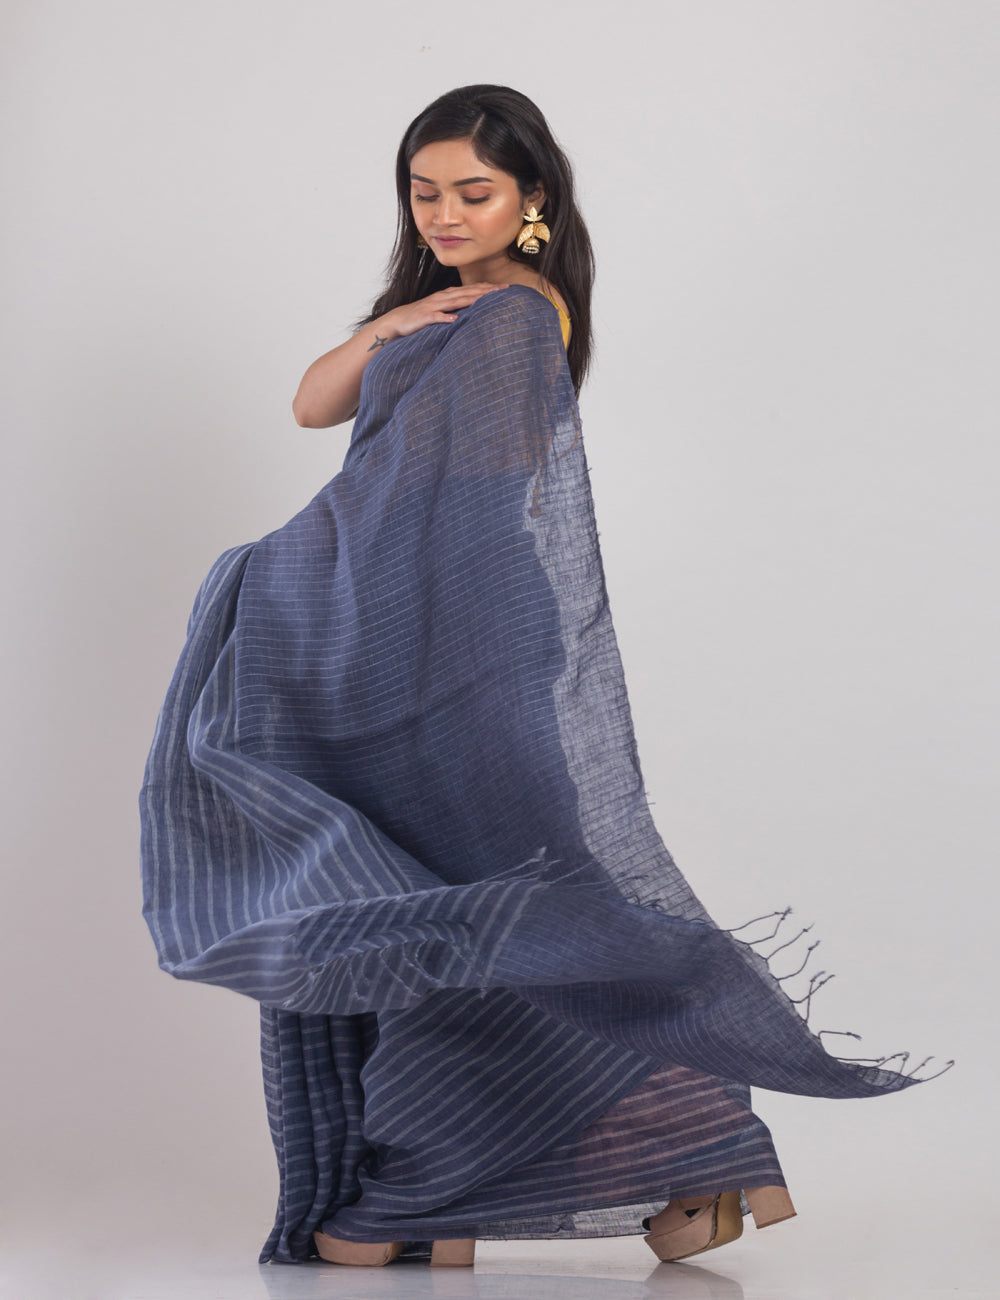 Grey blue stripes handwoven linen sari